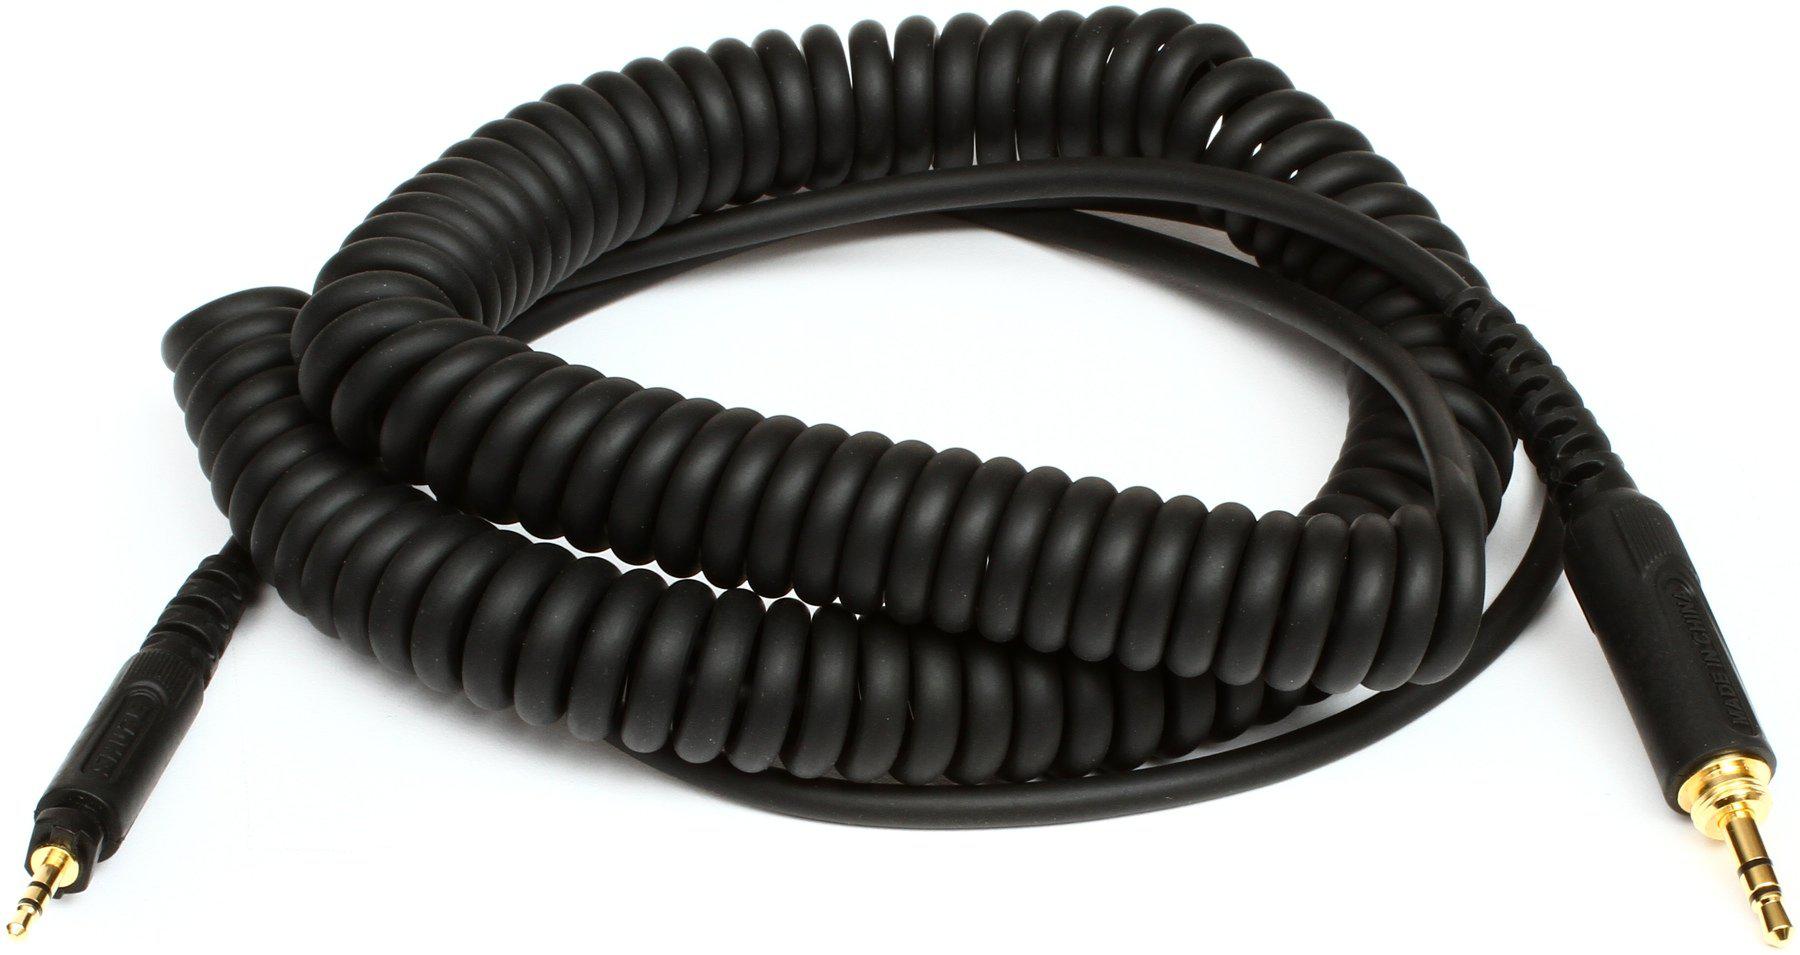 Shure - Cable espiral de reemplazo para los audifonos profesionales SRH840, SRH750DJ y SRH440 Mod.HPACA1_6